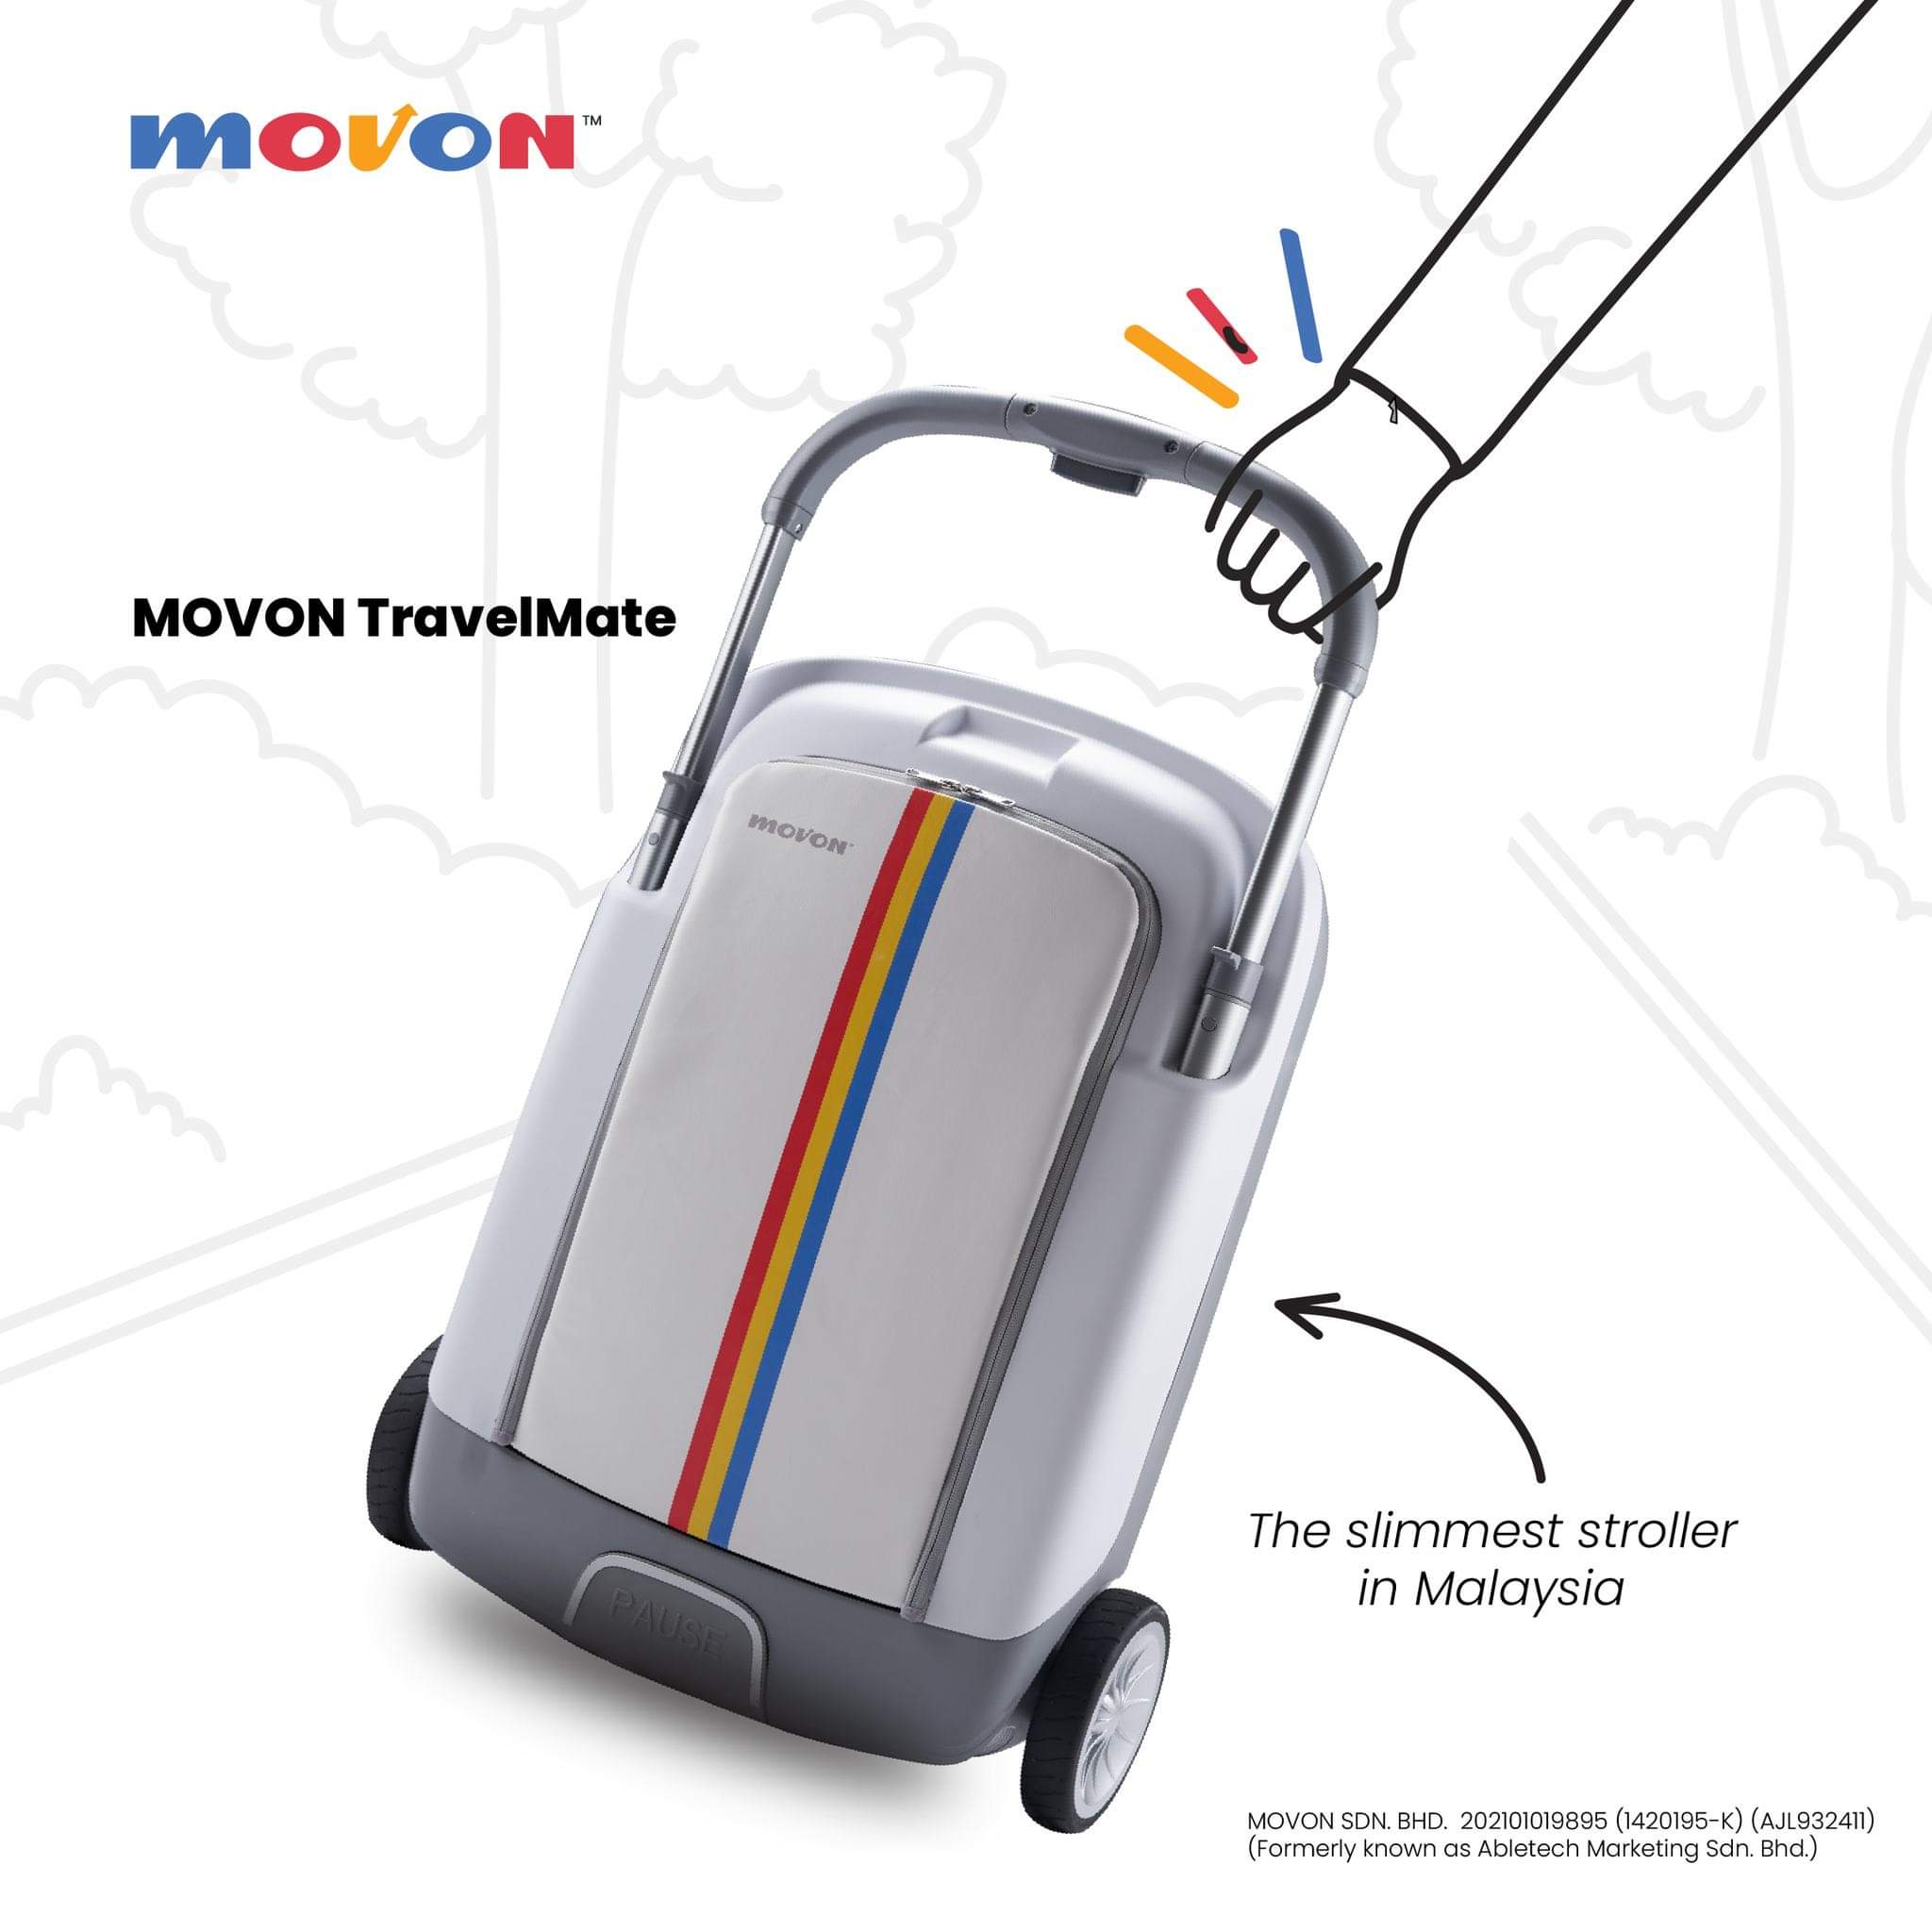 Movon TravelMate Stroller